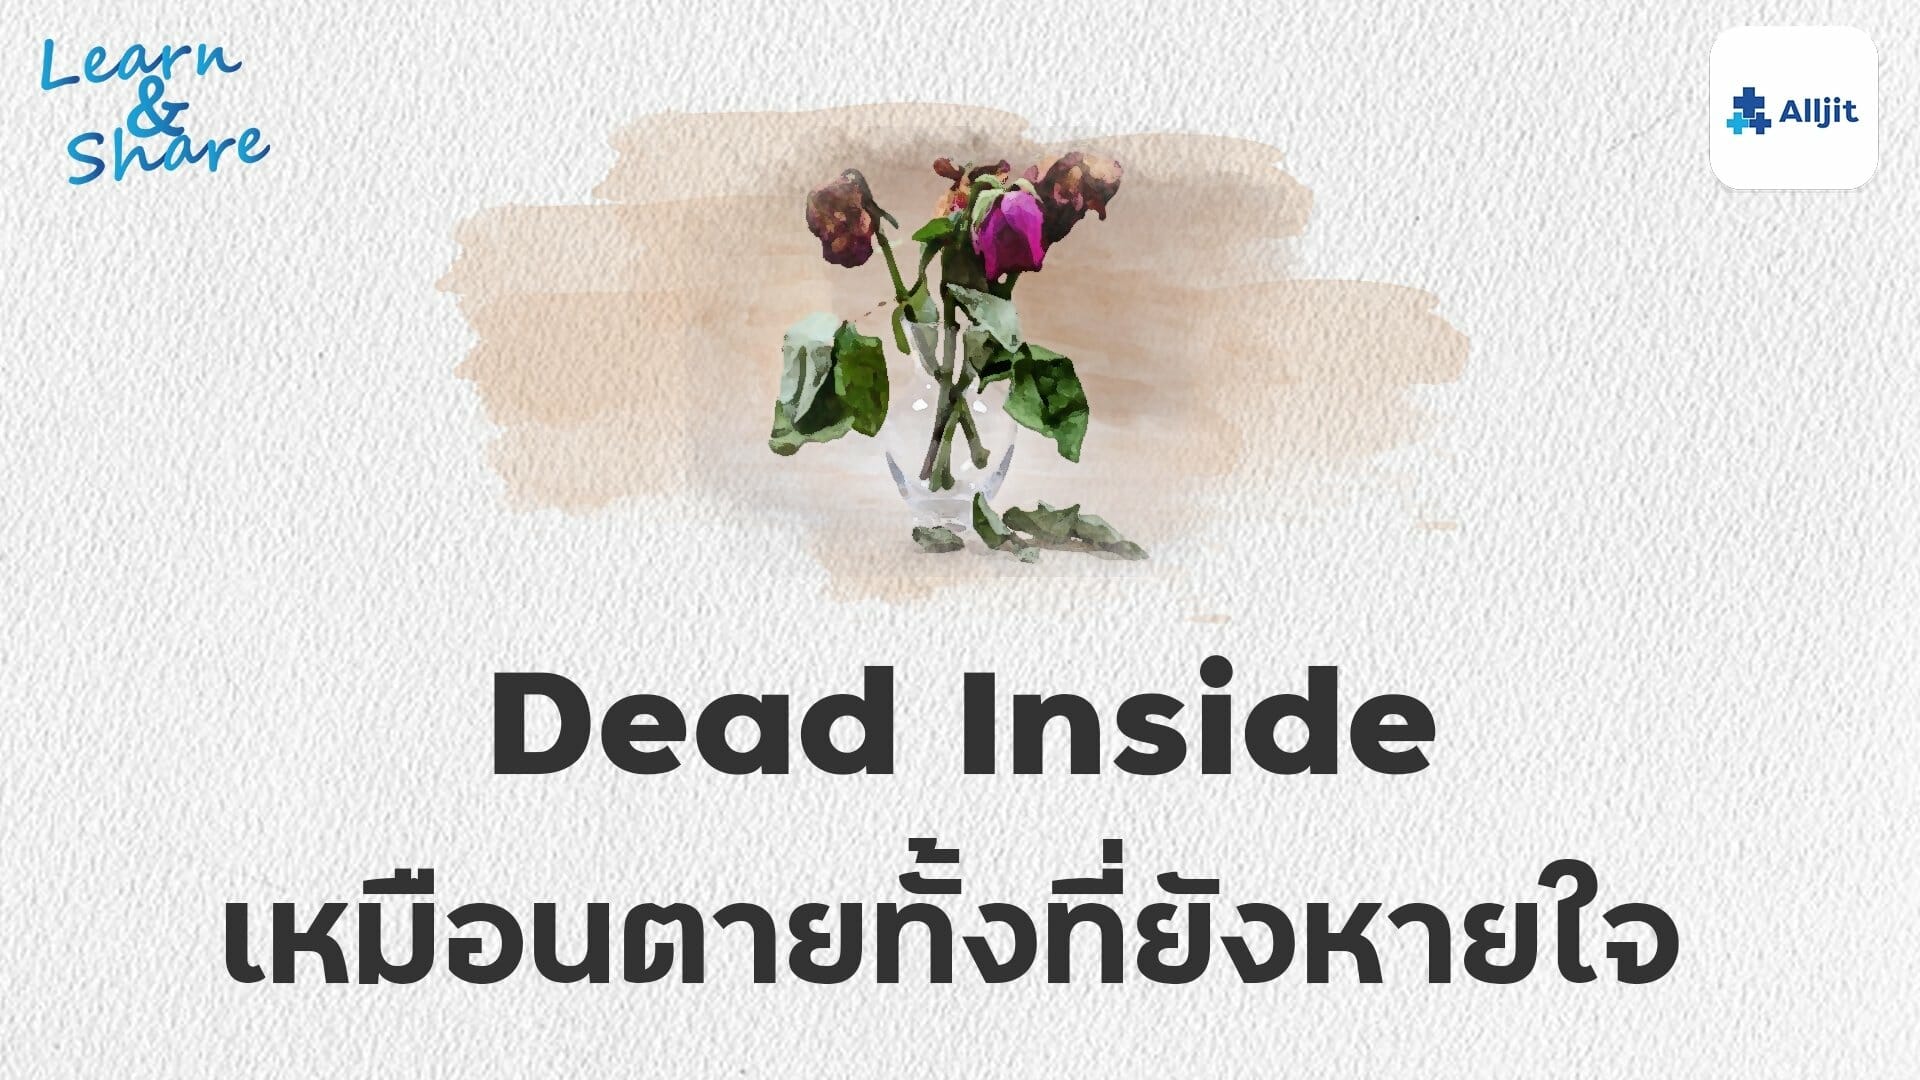 dead inside